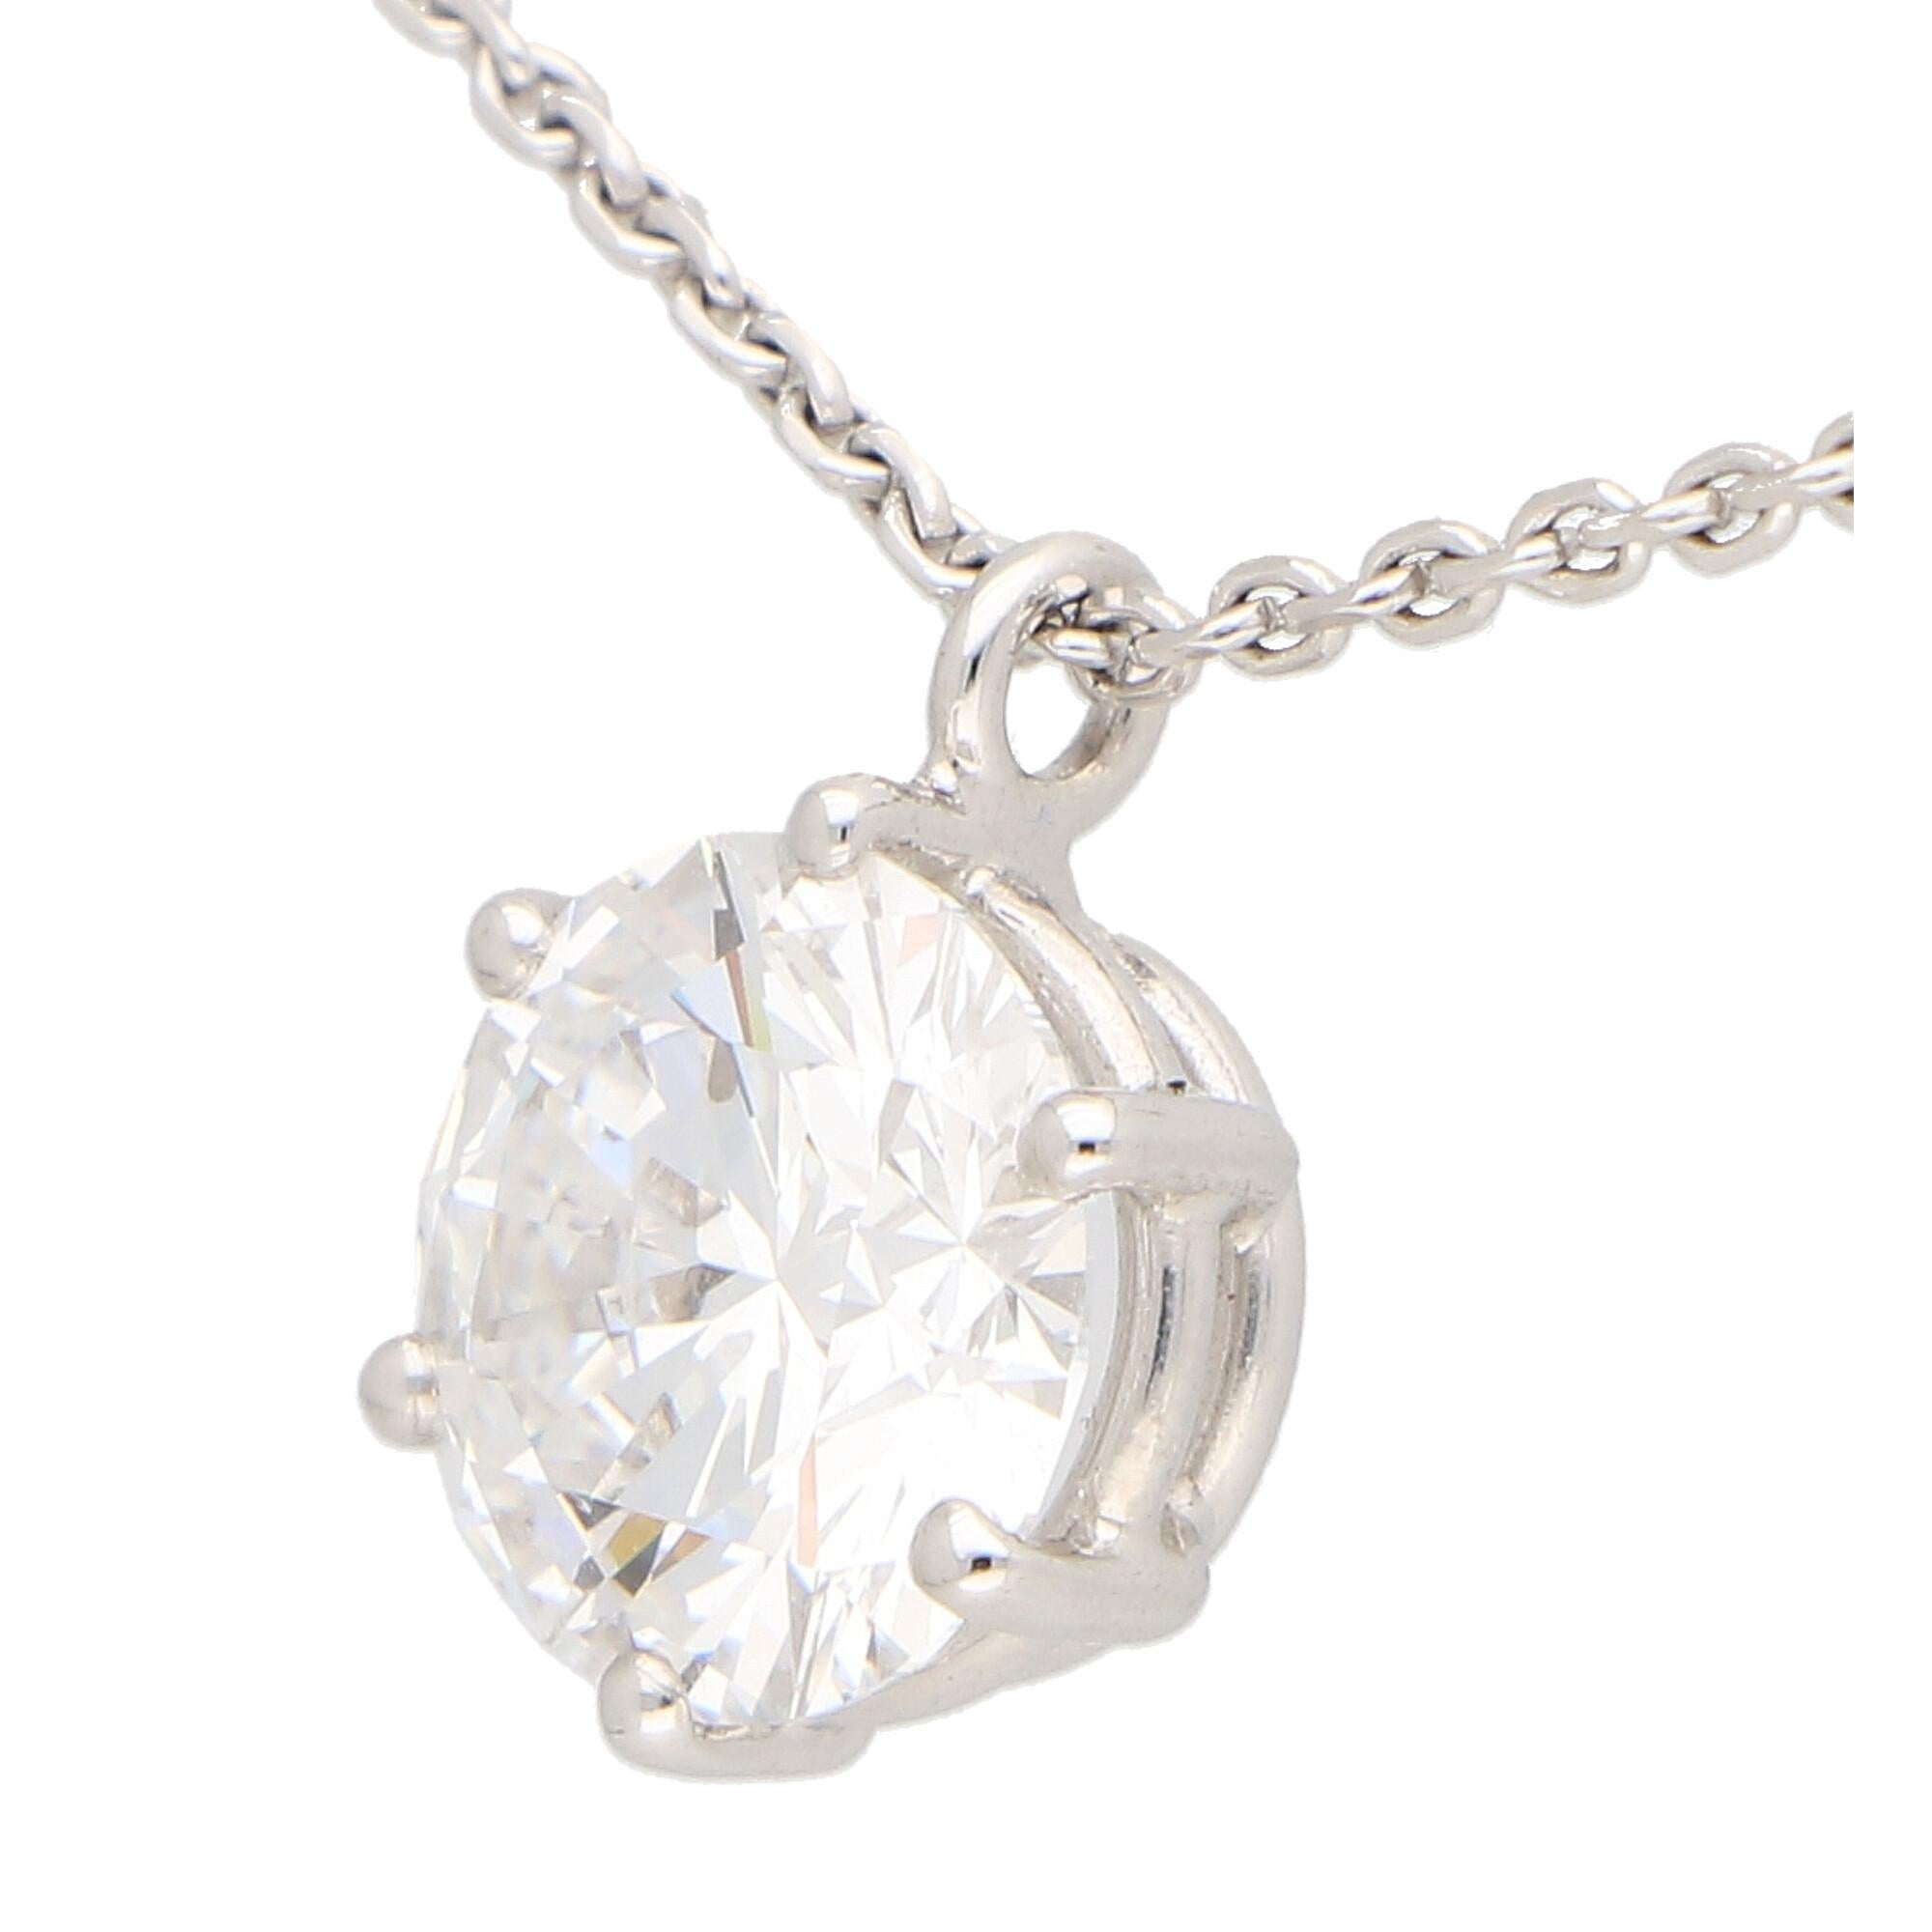 Un magnifique pendentif en diamant d'une seule pierre, certifié par le GIA, en or blanc 18 carats.

Le collier est orné d'un spectaculaire diamant rond de taille brillant de 2,40 ct, serti dans une galerie ouverte à six griffes. La véritable beauté